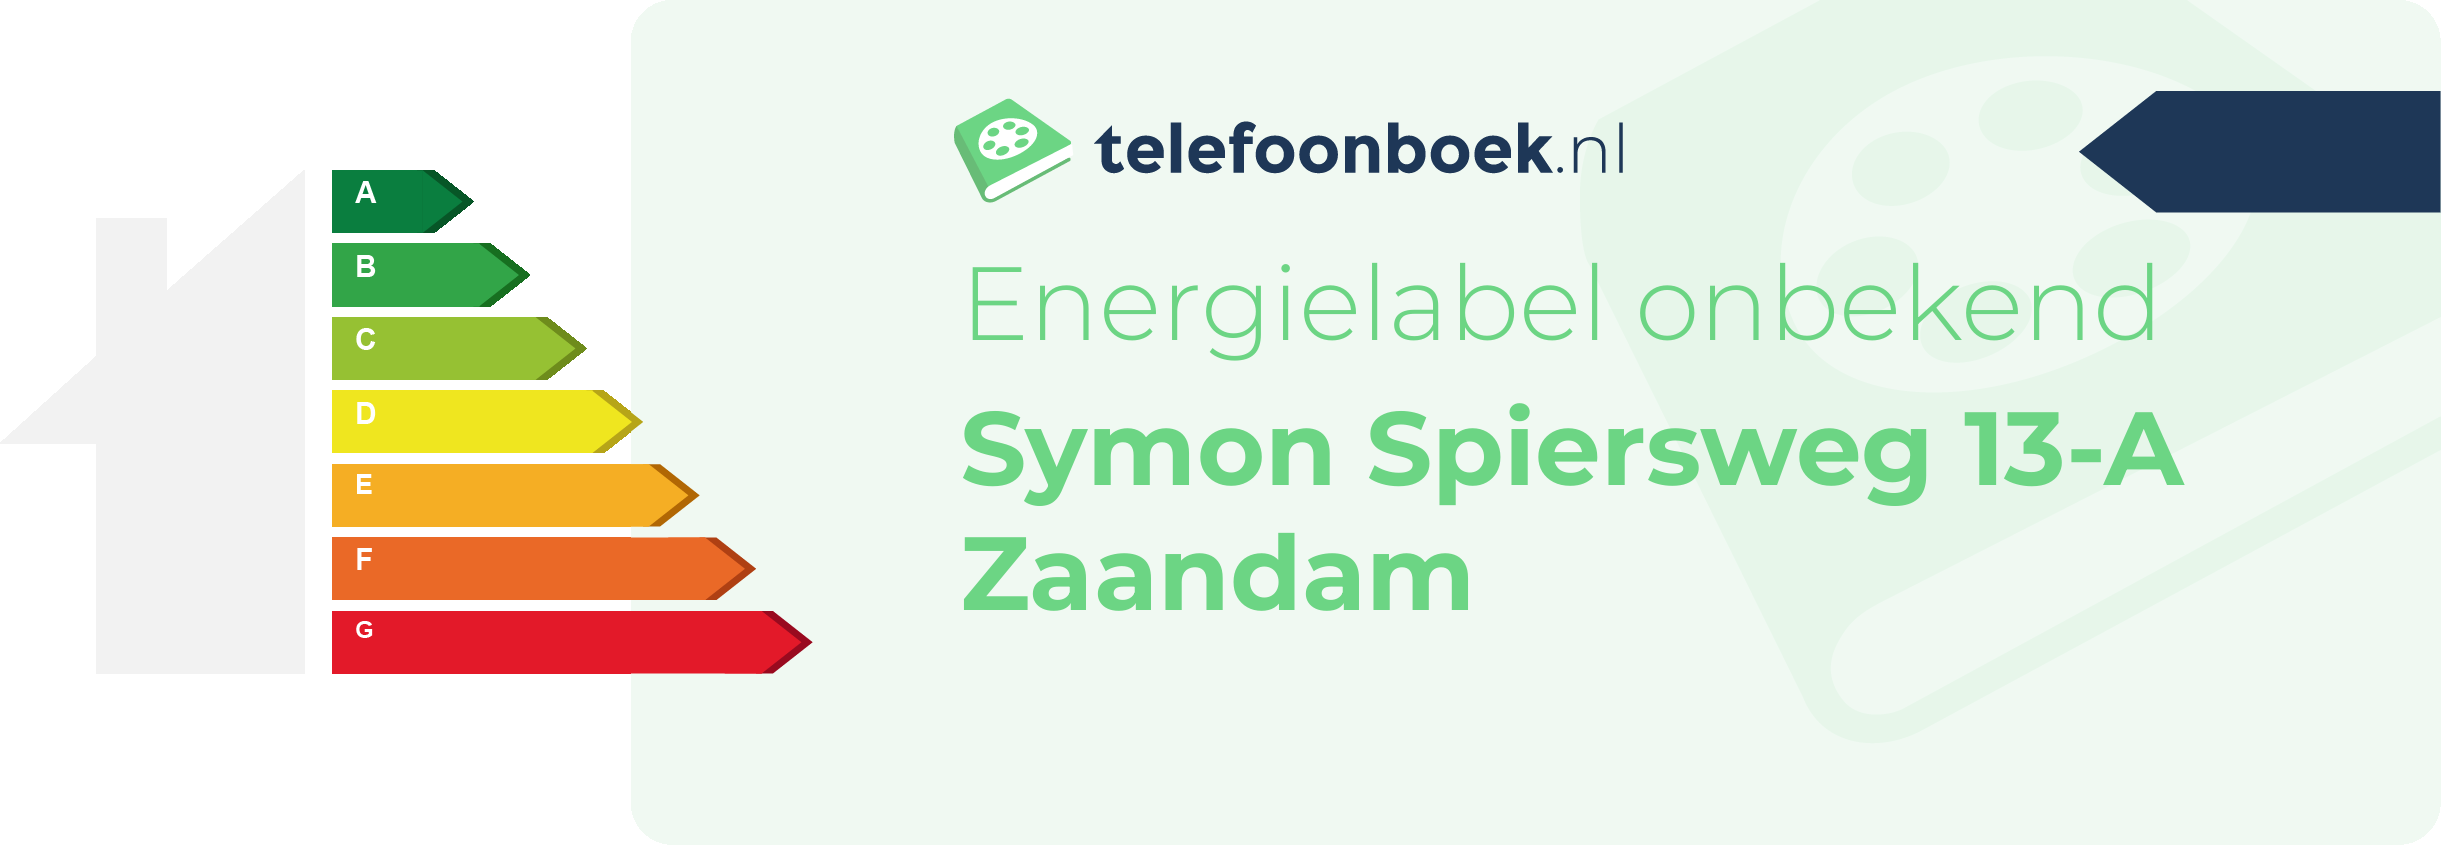 Energielabel Symon Spiersweg 13-A Zaandam